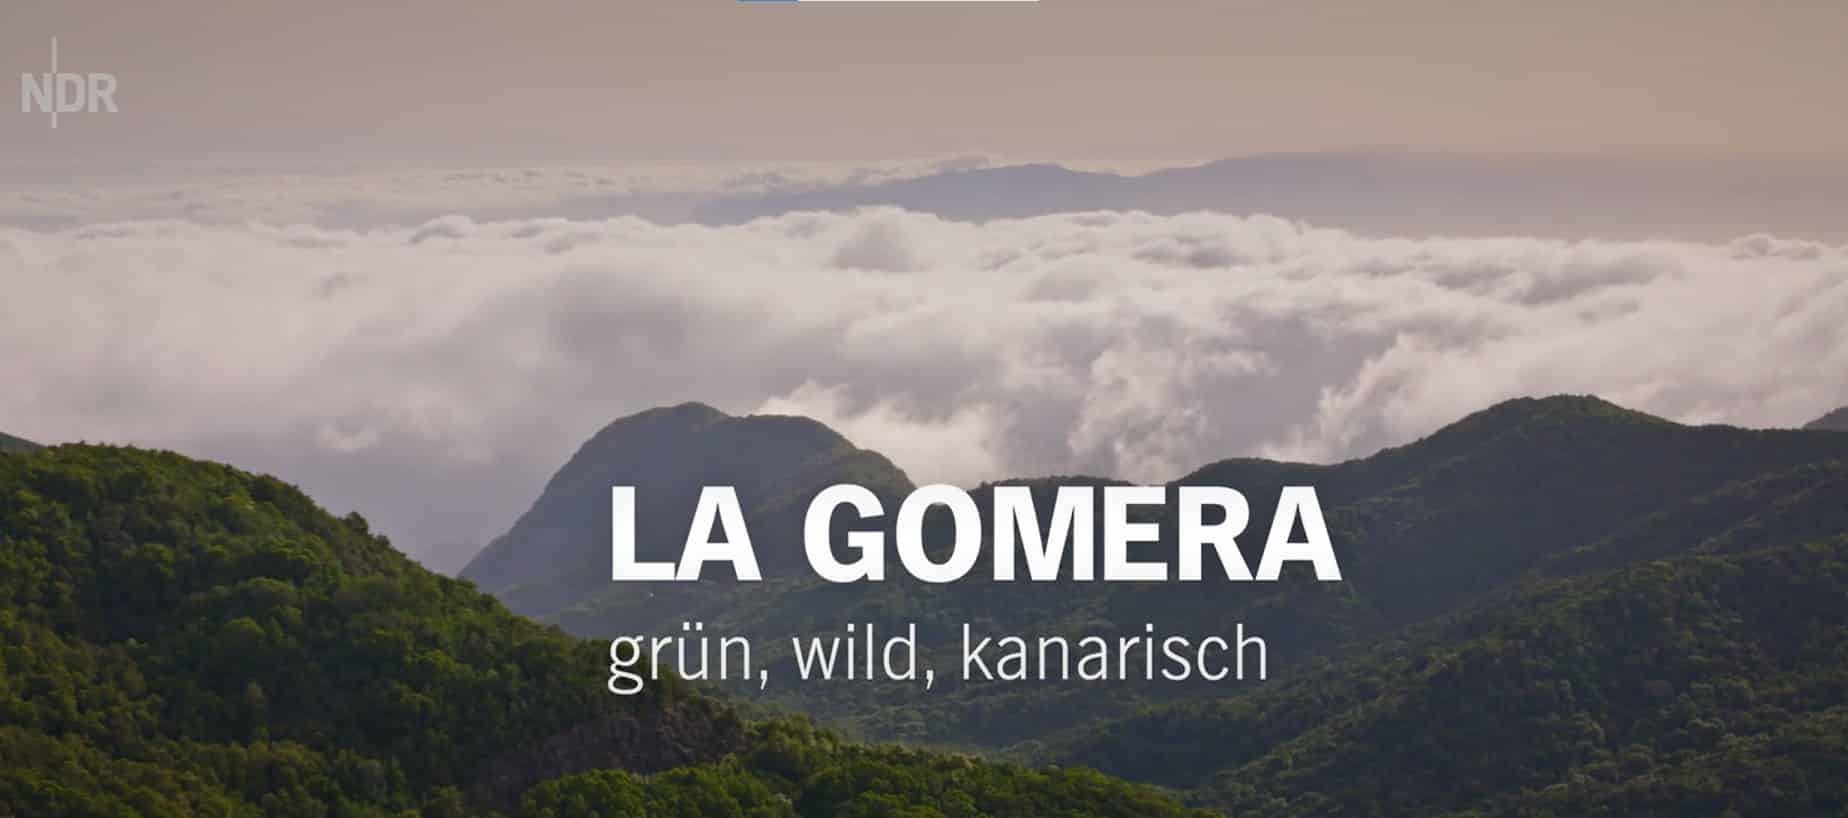 La televisión pública alemana dedica un programa a los valores naturales y patrimoniales de La Gomera